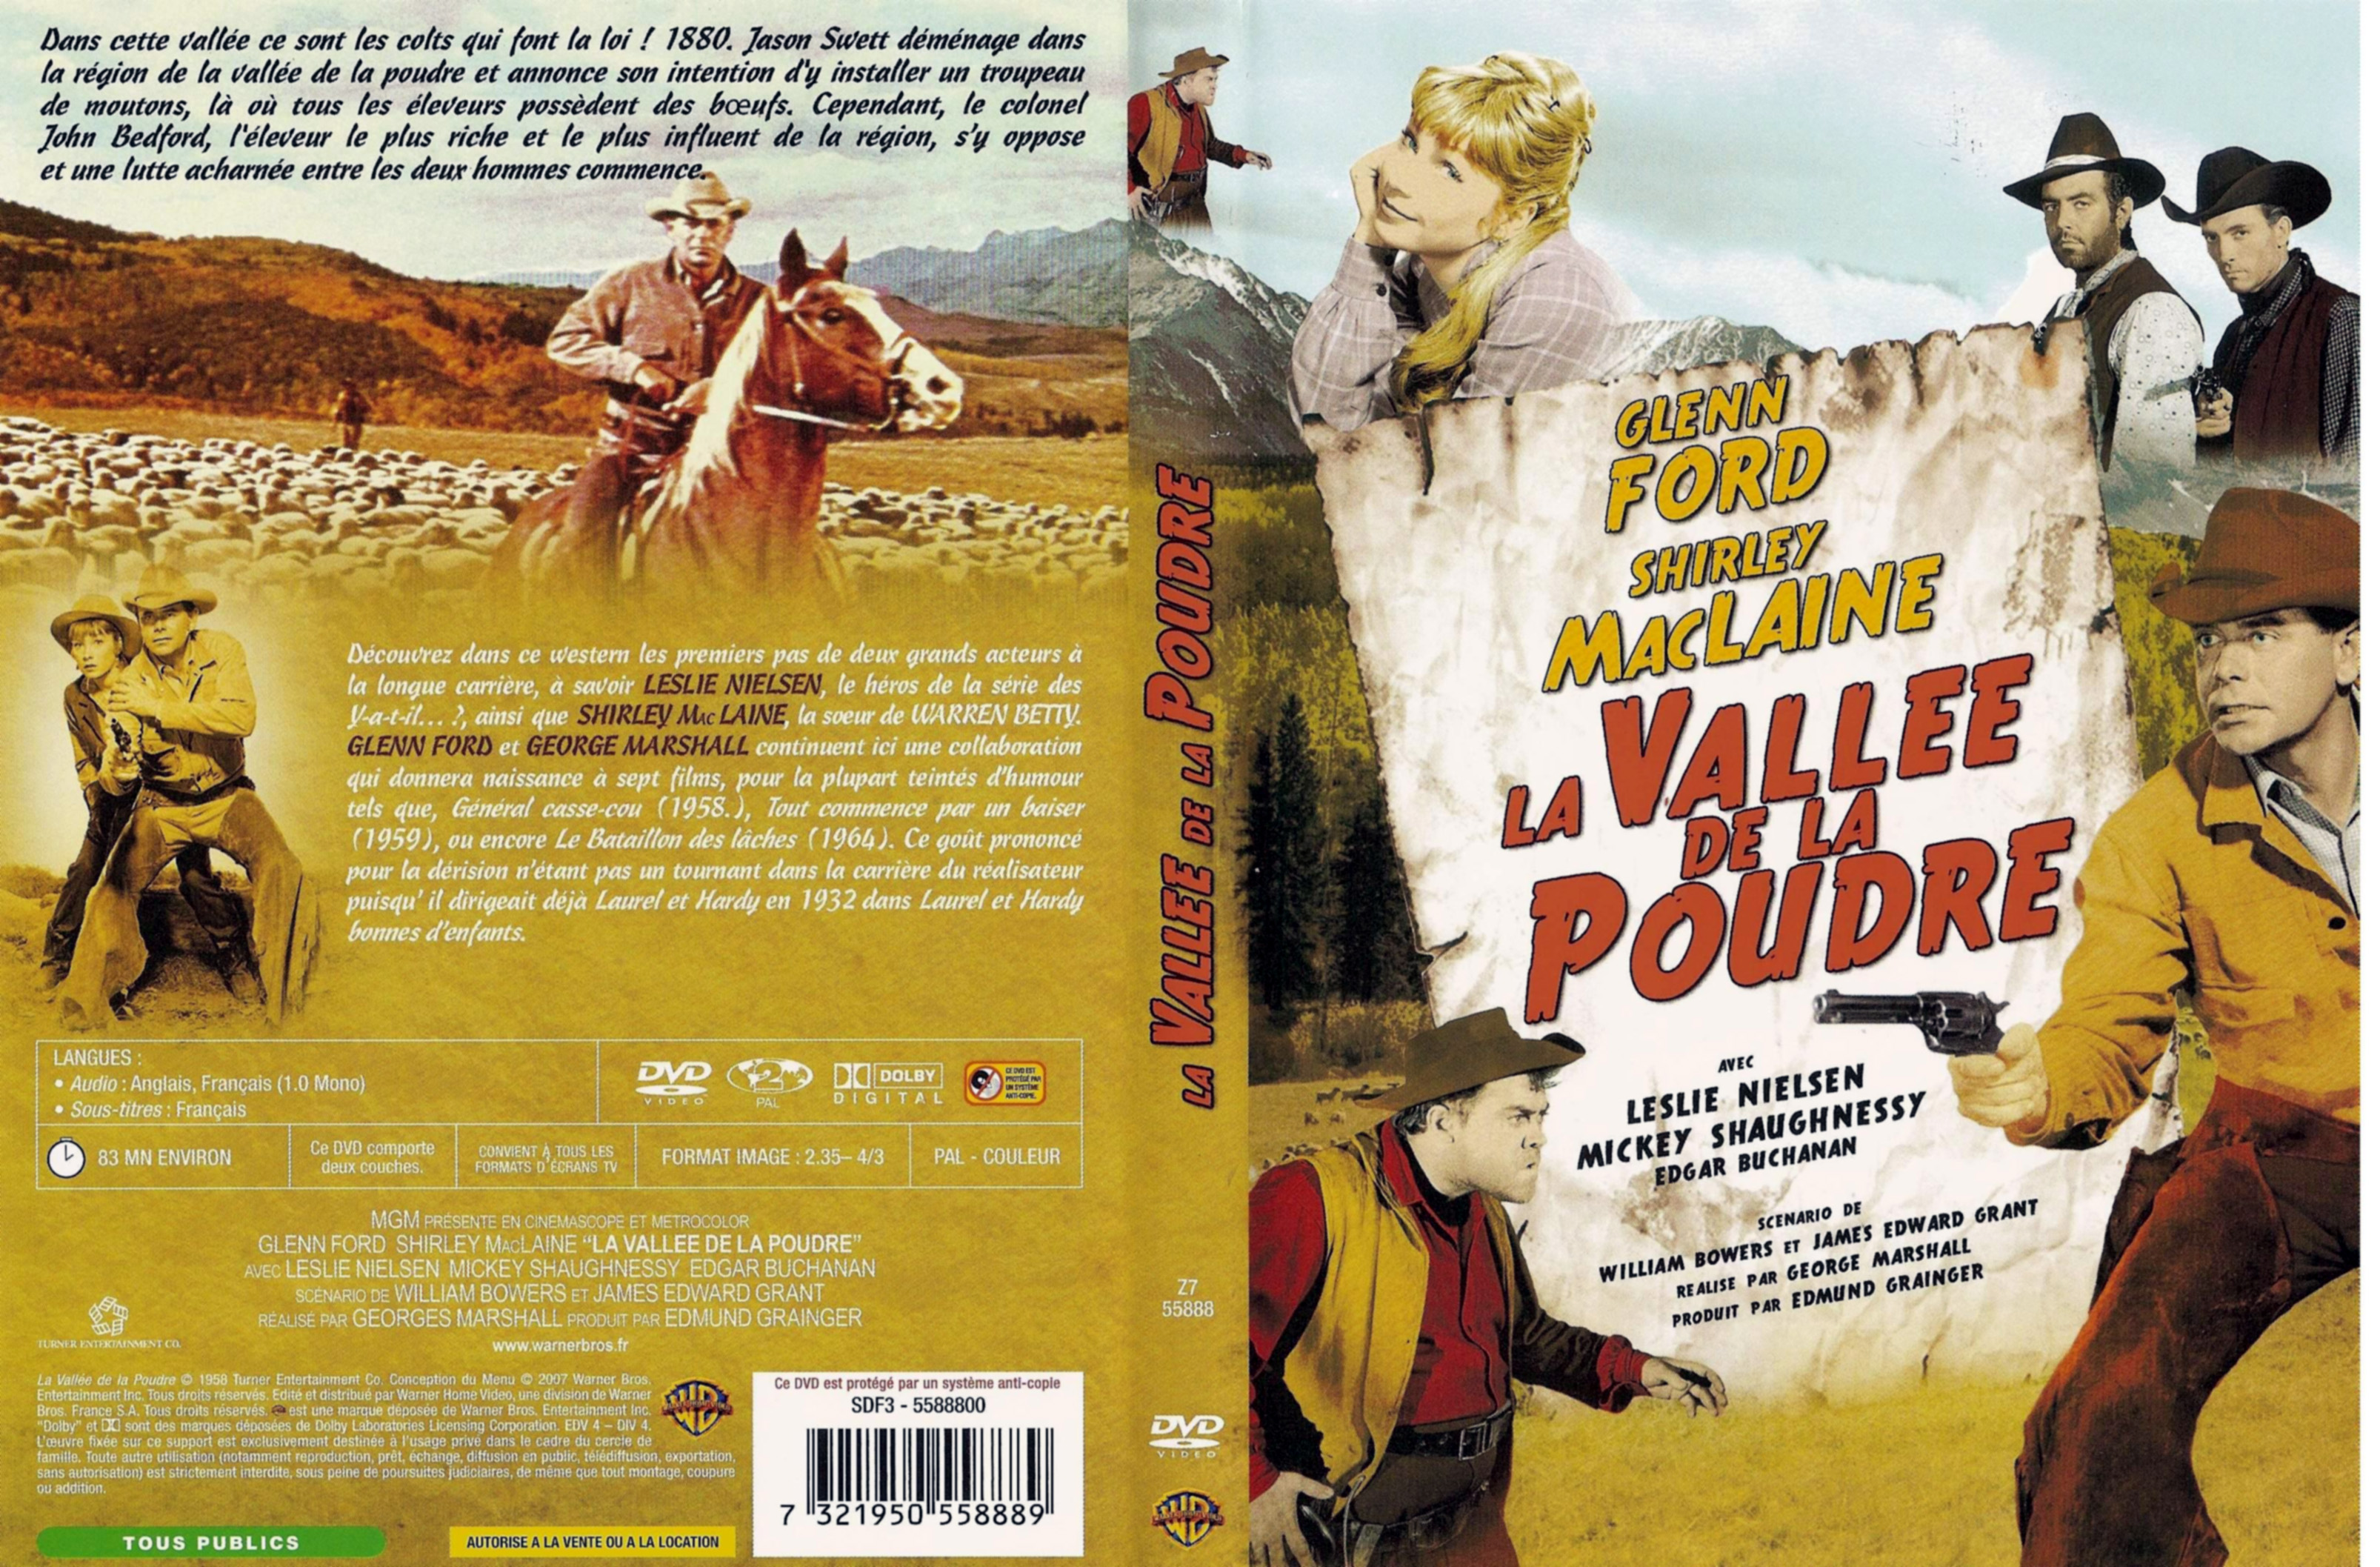 Jaquette DVD La valle de la poudre